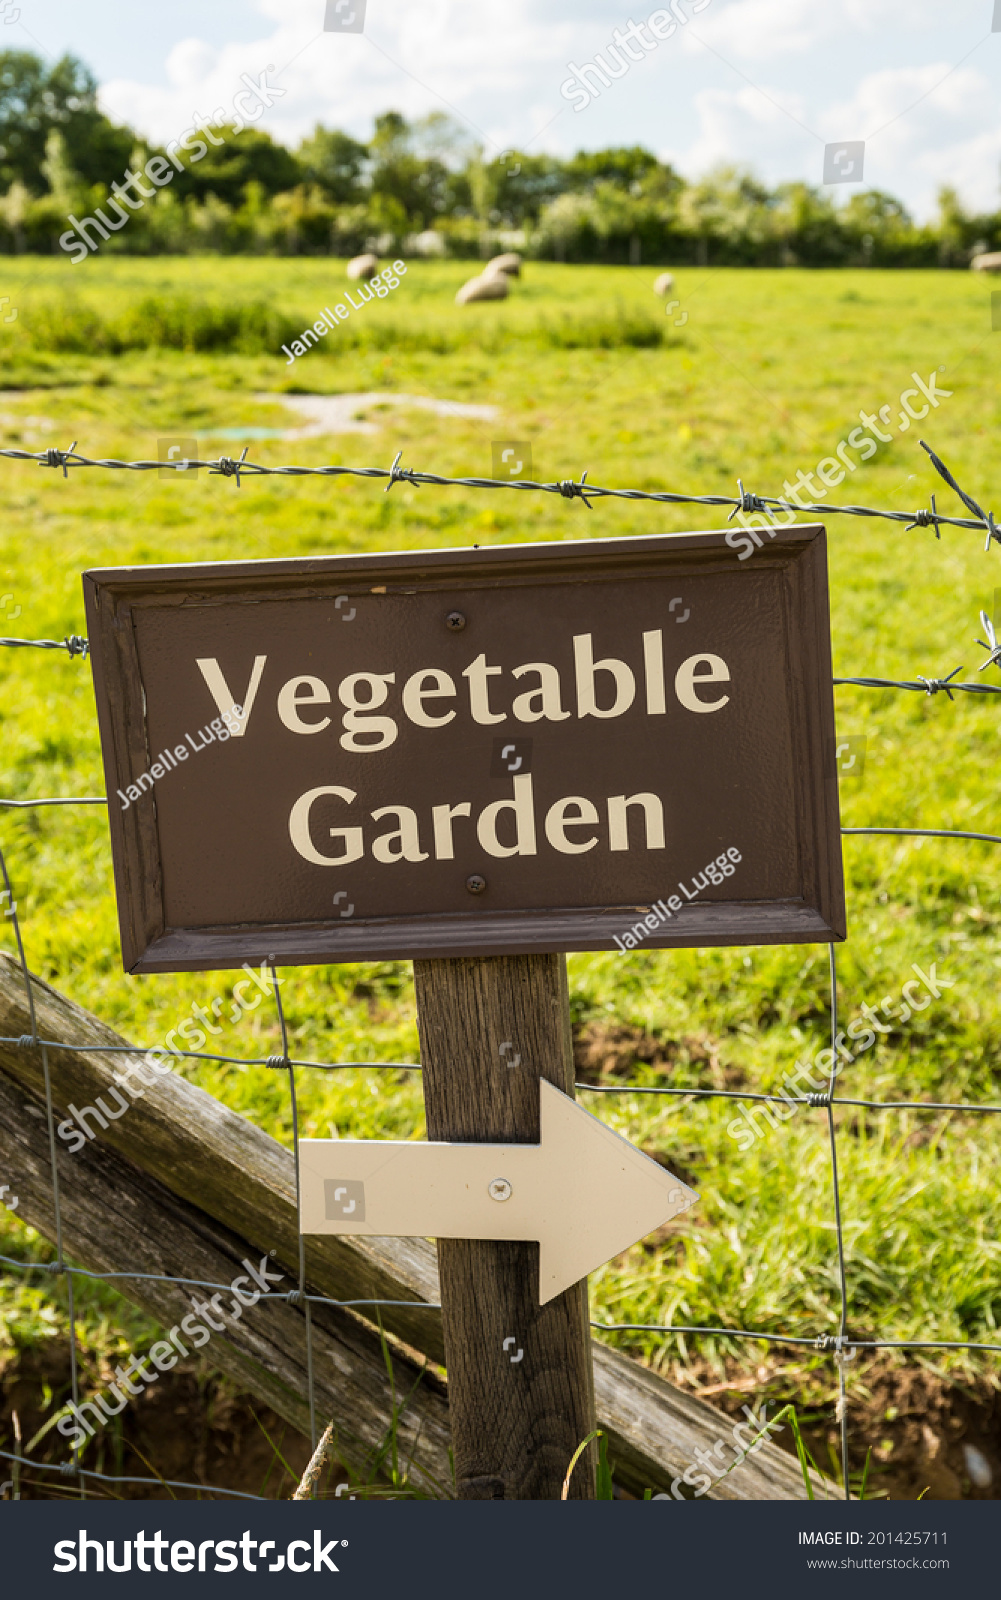 Vegetable Garden Sign Stock Photo 201425711 : Shutterstock